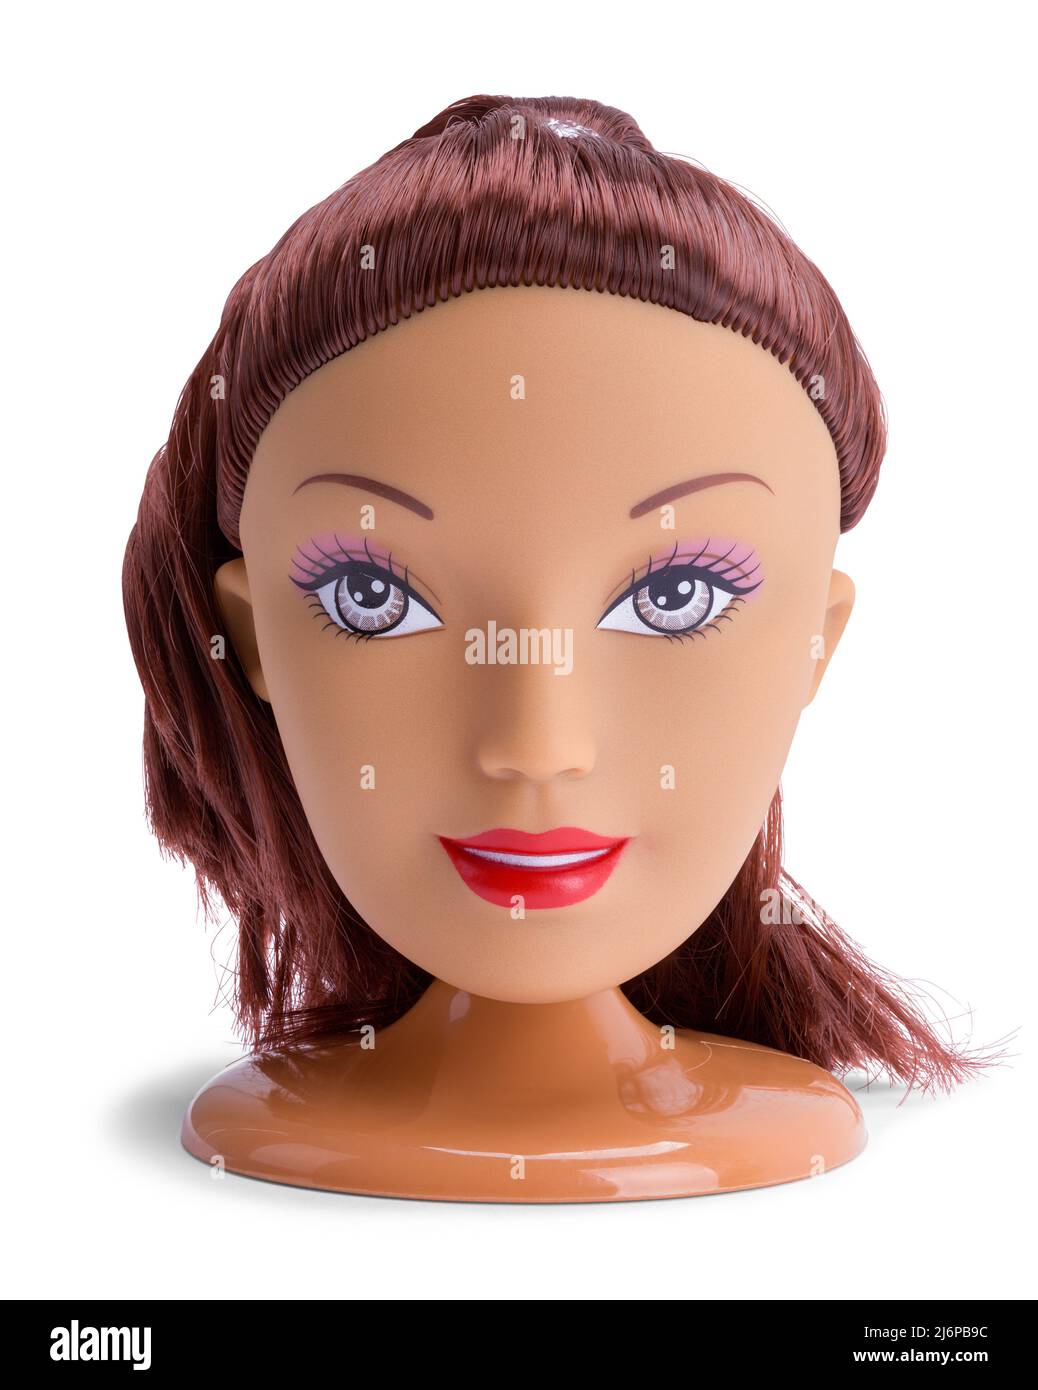 Puppe Kopf Gesicht Spielzeug auf Weiß ausgeschnitten. Stockfoto